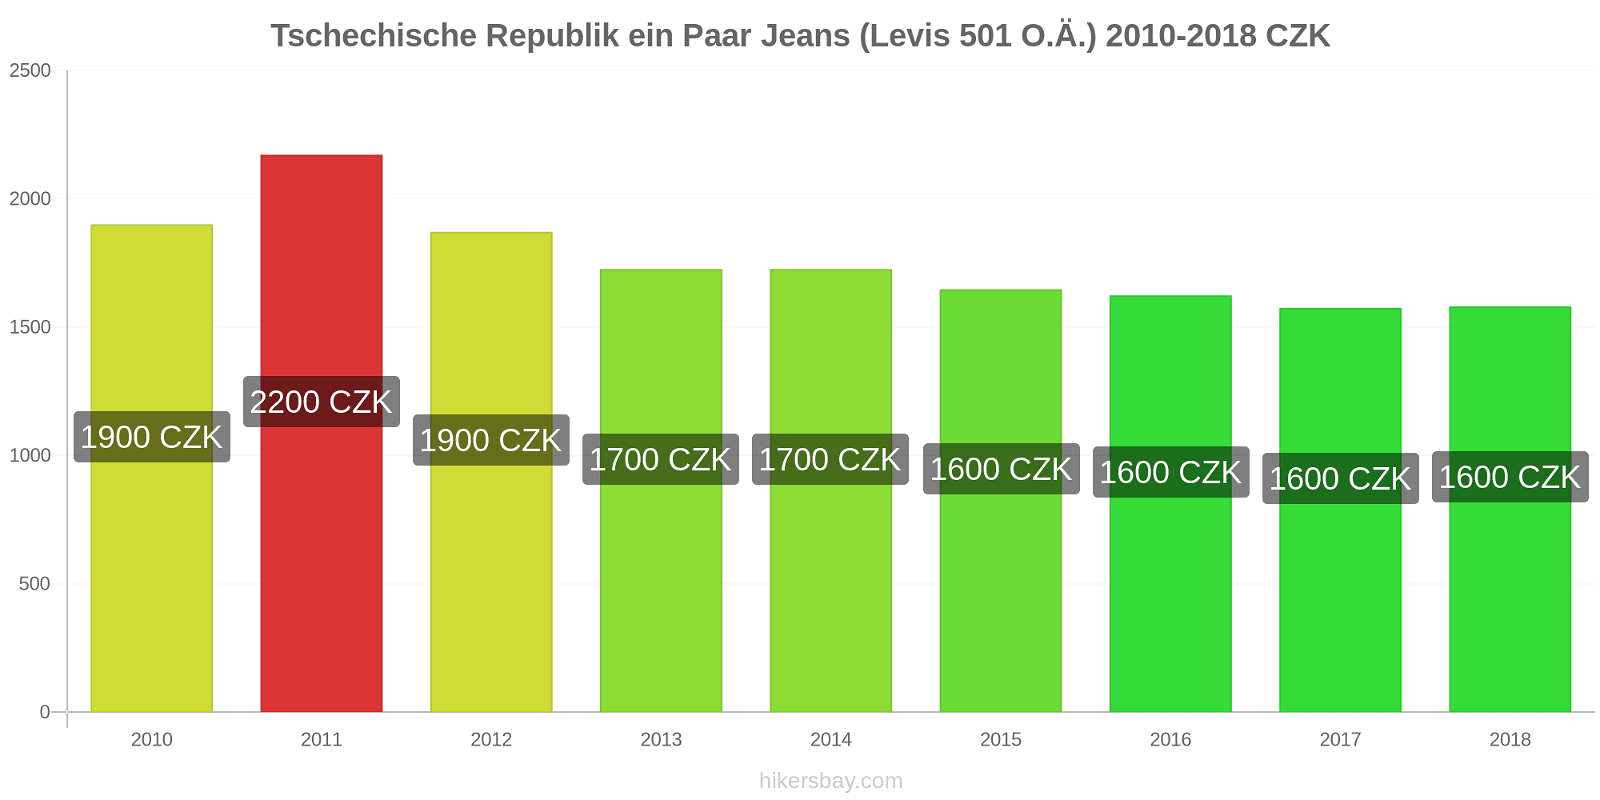 Tschechische Republik Preisänderungen 1 Paar Jeans (Levis 501 oder ähnlich) hikersbay.com